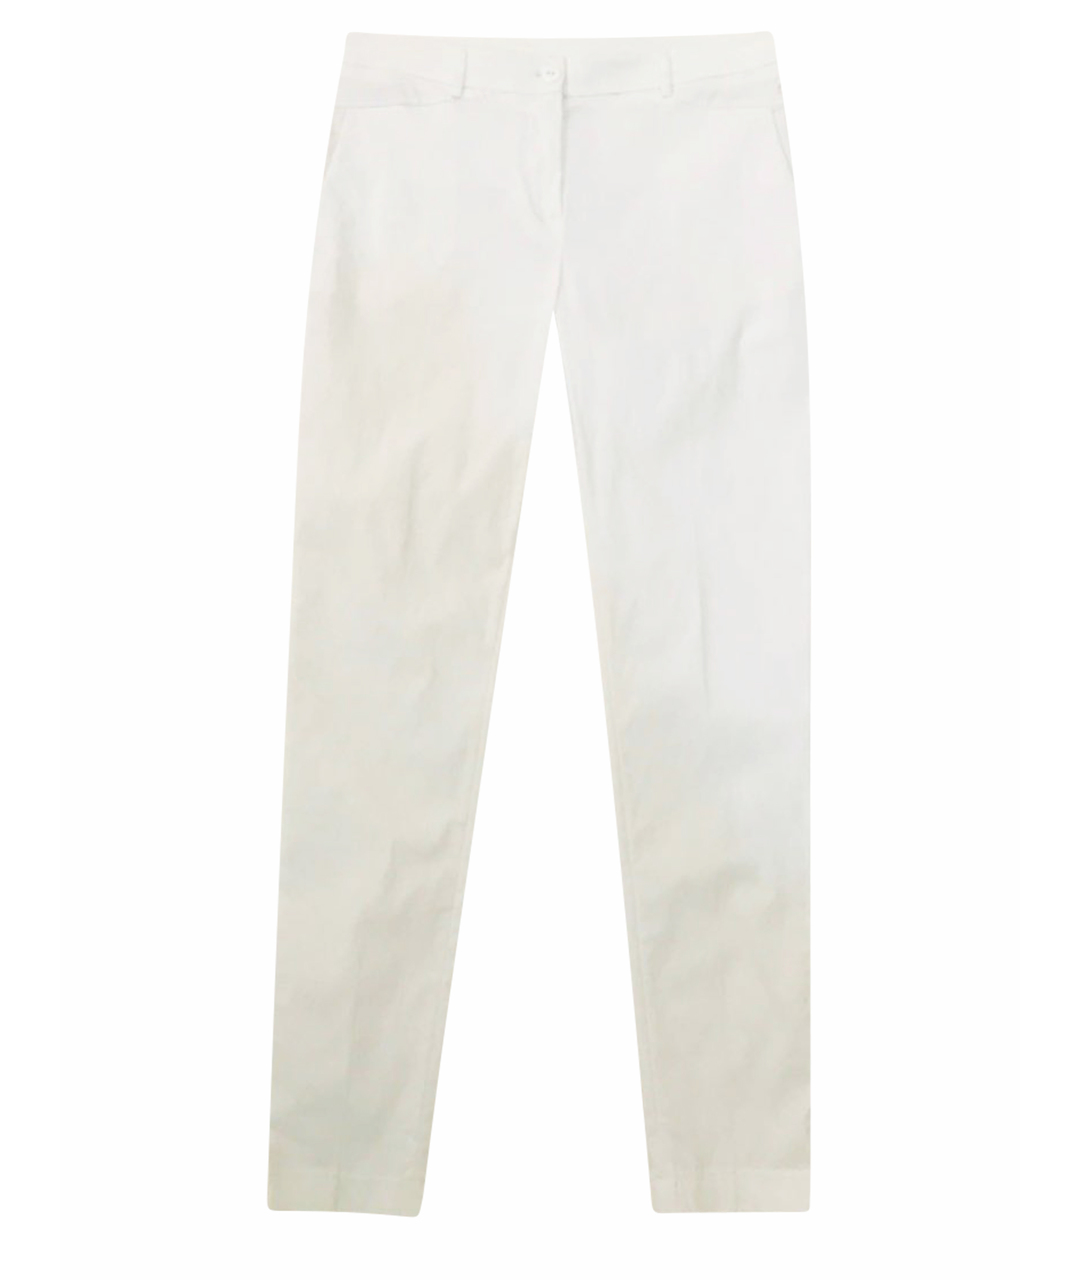 TWIN-SET Белые вискозные брюки узкие, фото 1